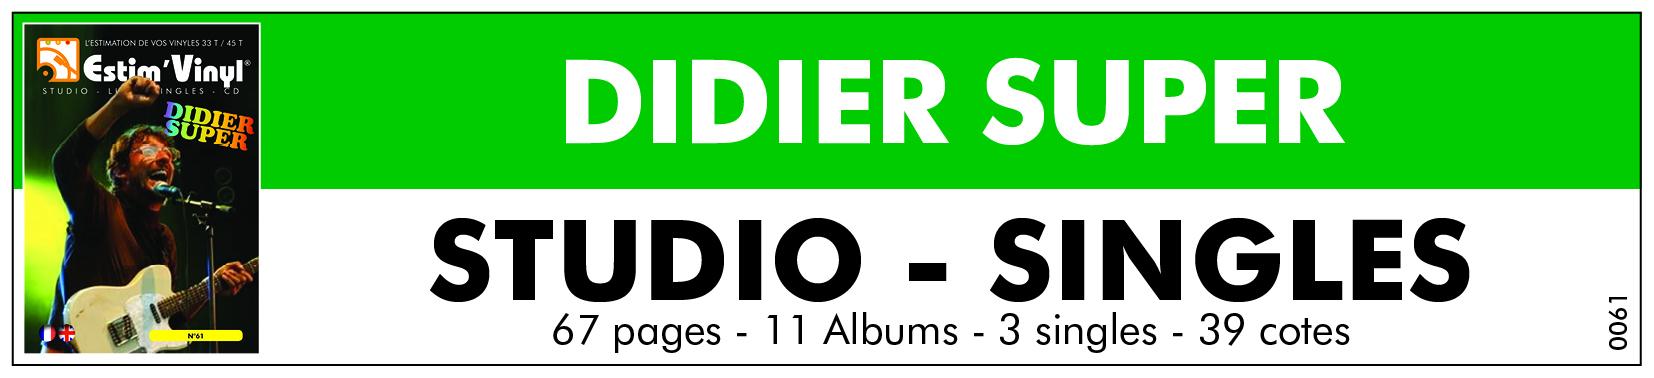 Toute la discographie cotée vinyles et cd de Didier Super, www.estimvinyl.com